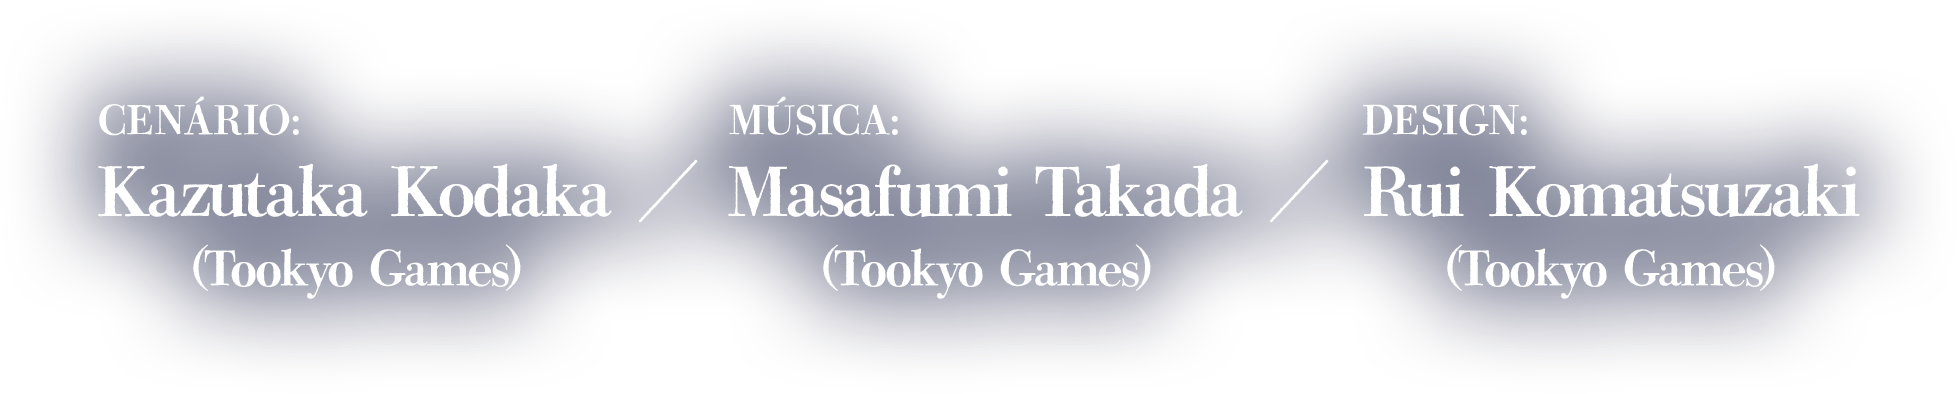 Cenário:Kazutaka Kodaka (Tookyo Games)Música:Masafumi Takada (Tookyo Games)Design:Rui Komatsuzaki (Tookyo Games)